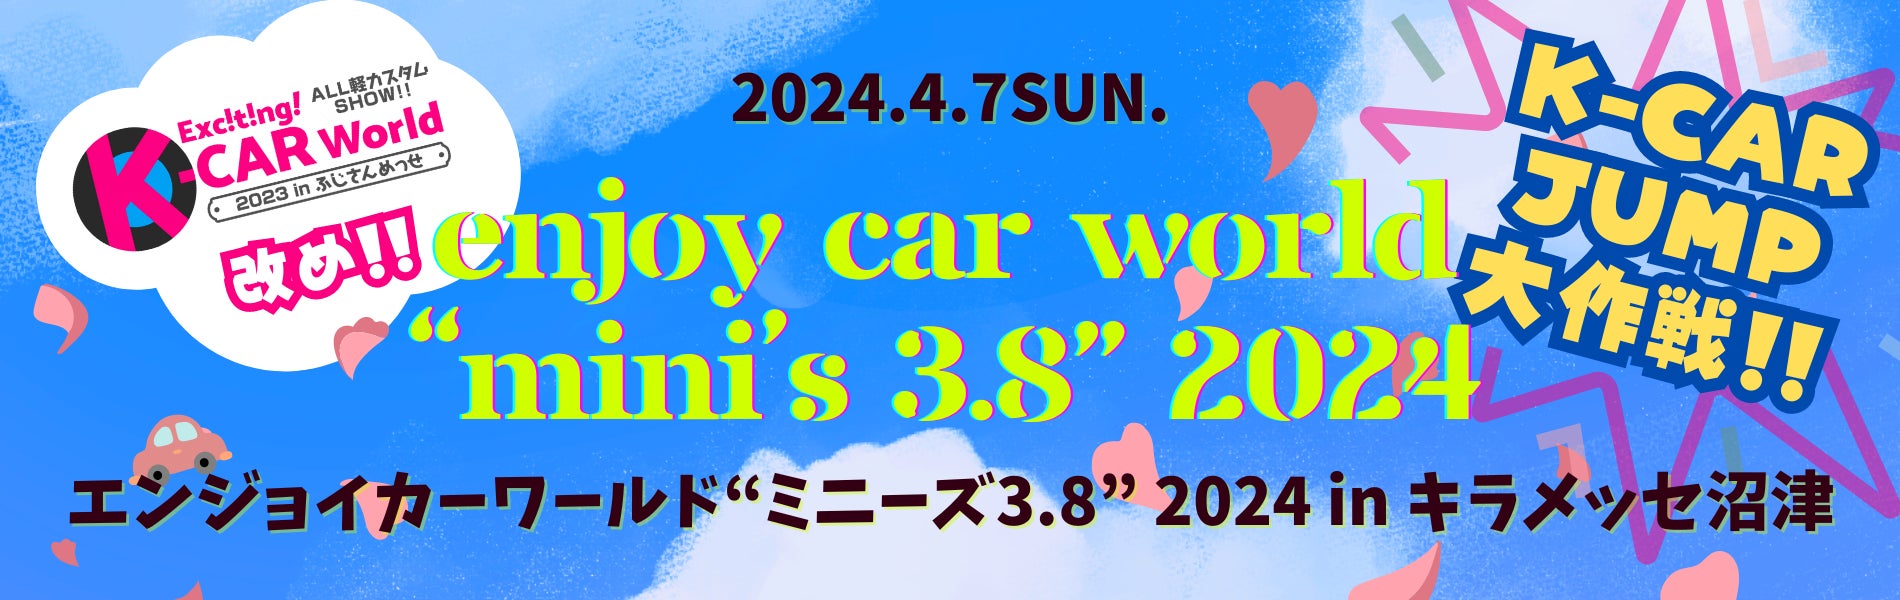 新日本自動車振興協会が新たなスモールカーワールドを創造「ENJOY CAR WORLD 841」から「ENJOY CAR WORLD "mi...